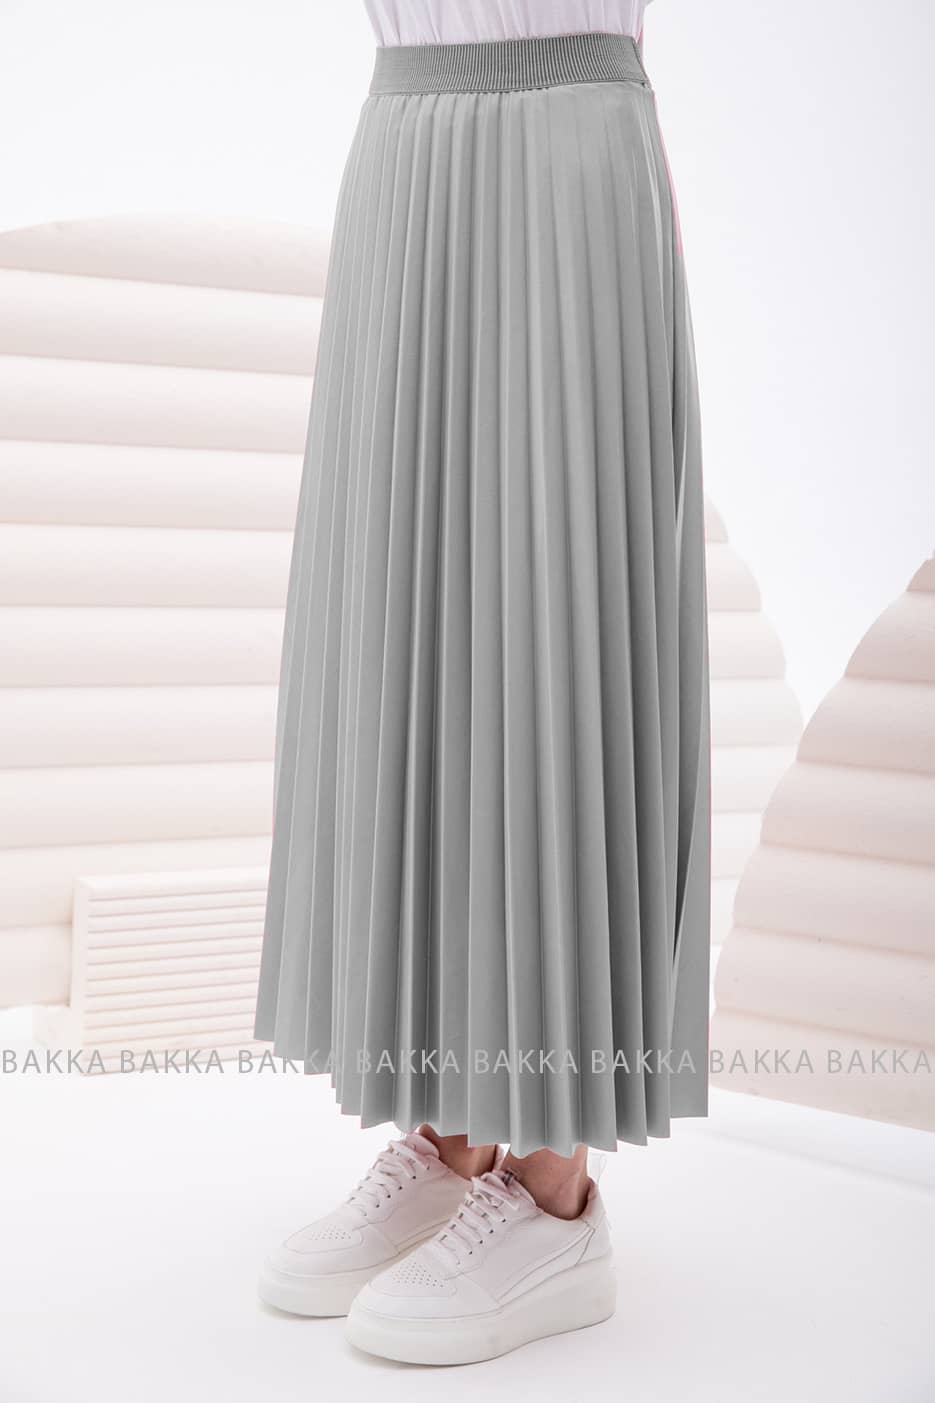 Skirt - 13349 - Gray - bakkaclothing